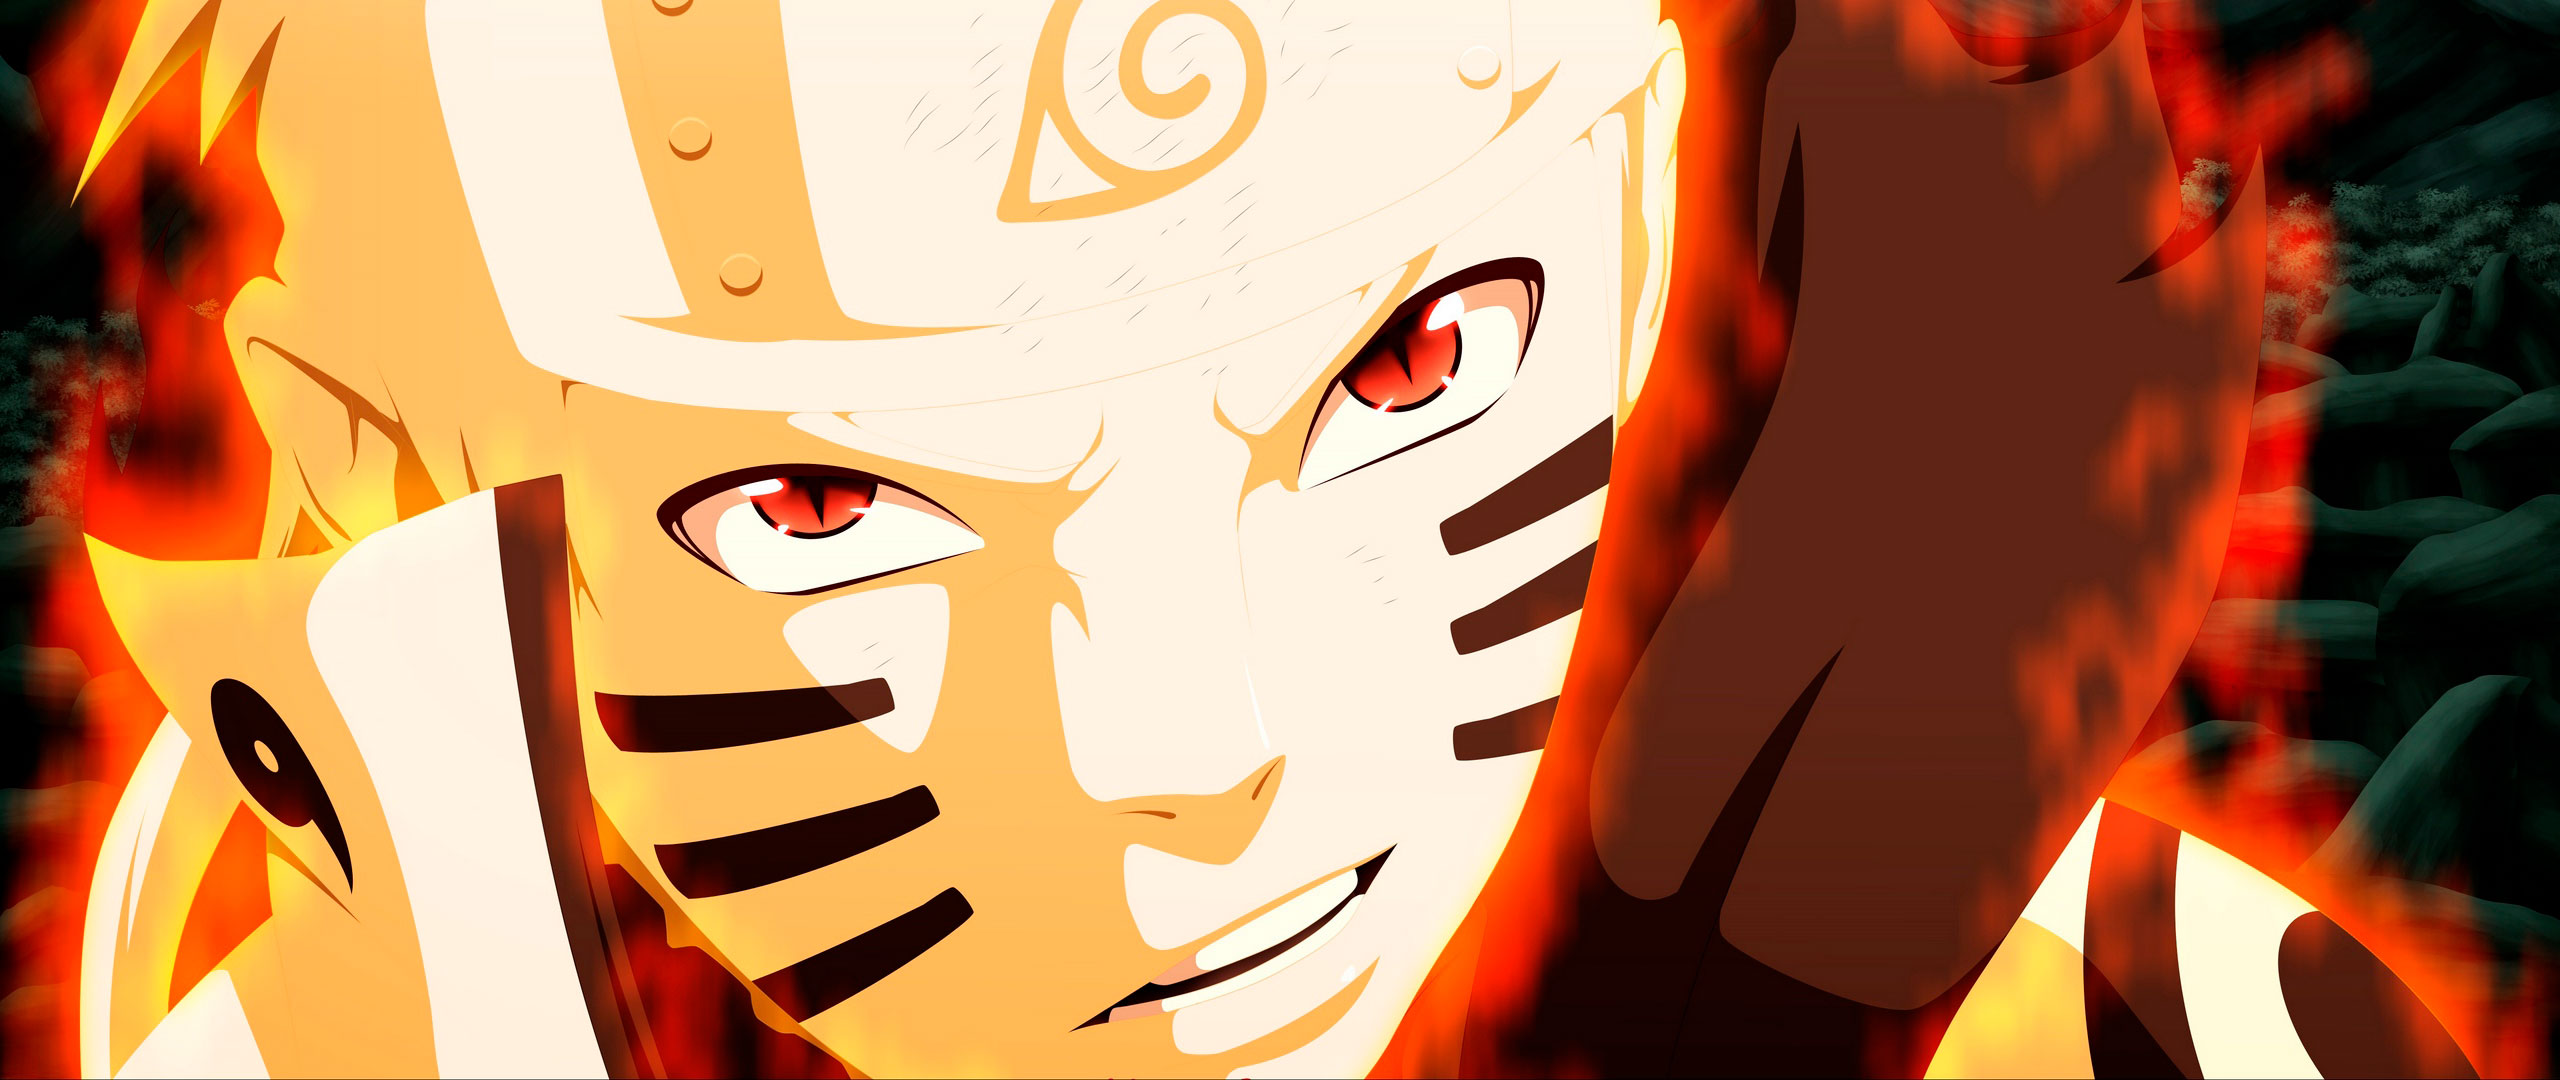 Naruto Shippuden: ¿Cómo ver el anime sin relleno?